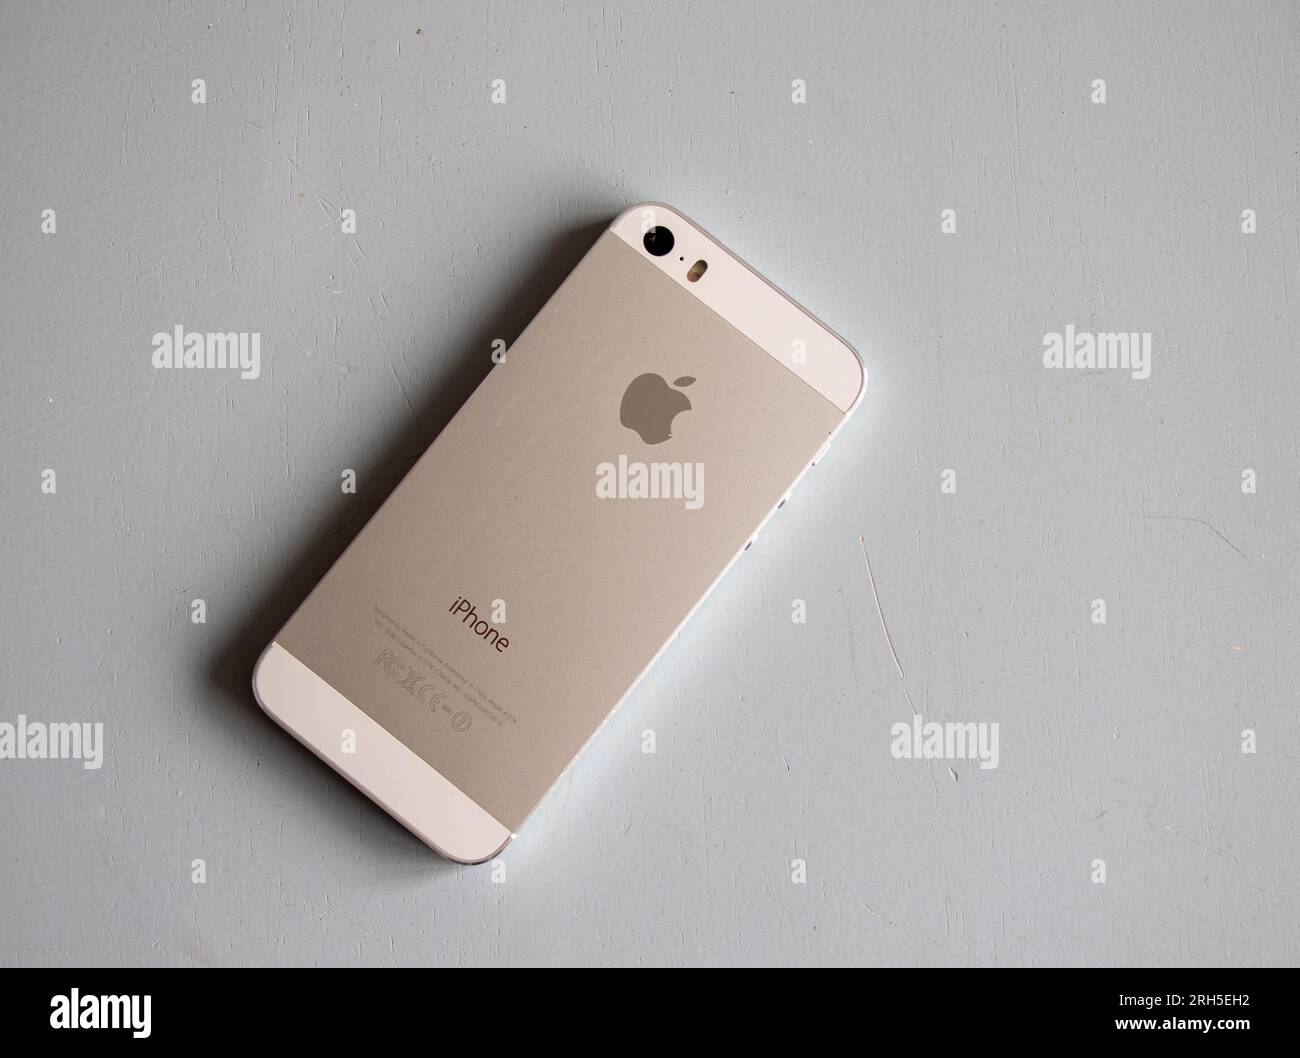 Das weiße Apple iPhone 5s wurde 2013 veröffentlicht. Es war damals begehrenswert und aufgrund seiner praktischen Größe bei manchen immer noch beliebt. Stockfoto